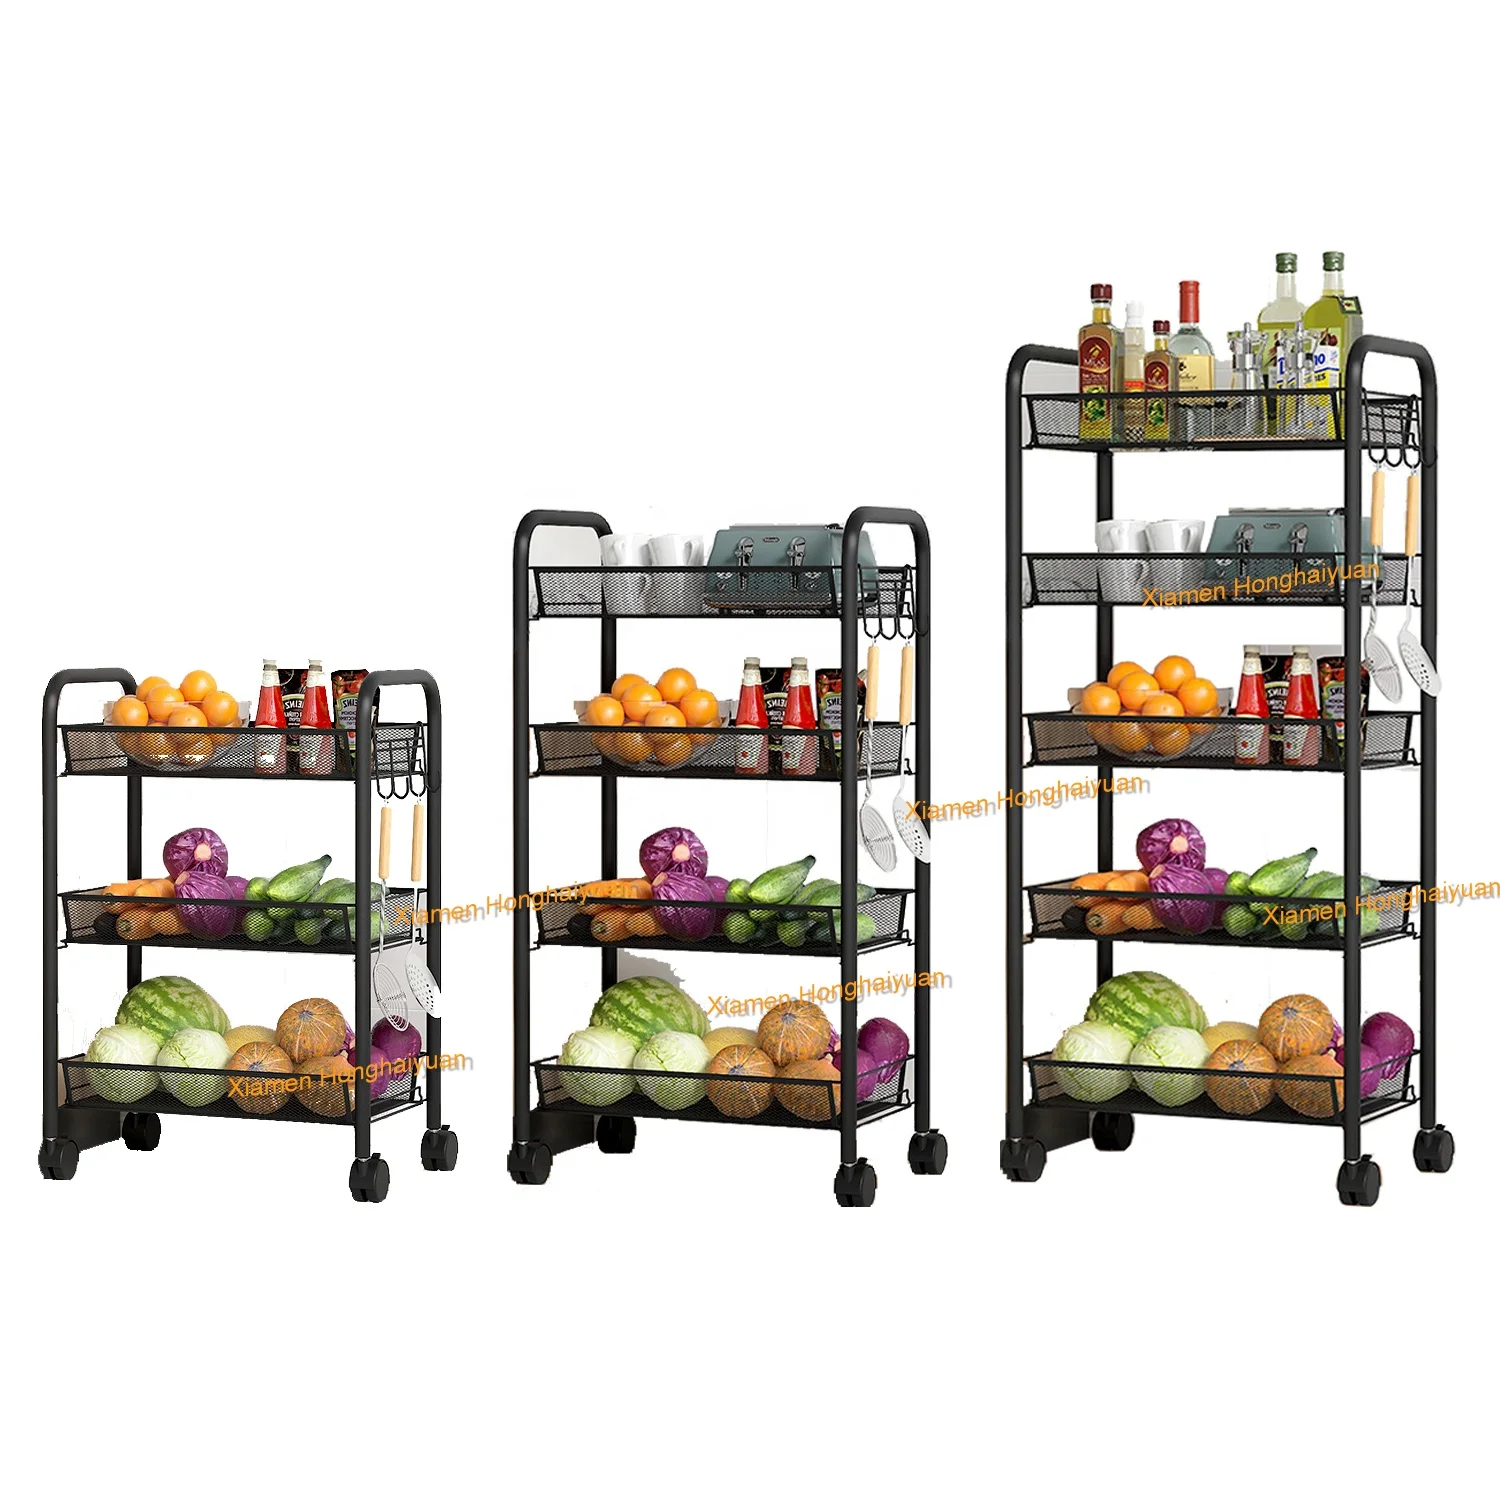 Wholesale 3/4/5 Tier Kitchen Trolley Cart Storage Organizer for the kitchen Other Kitchen Furniture